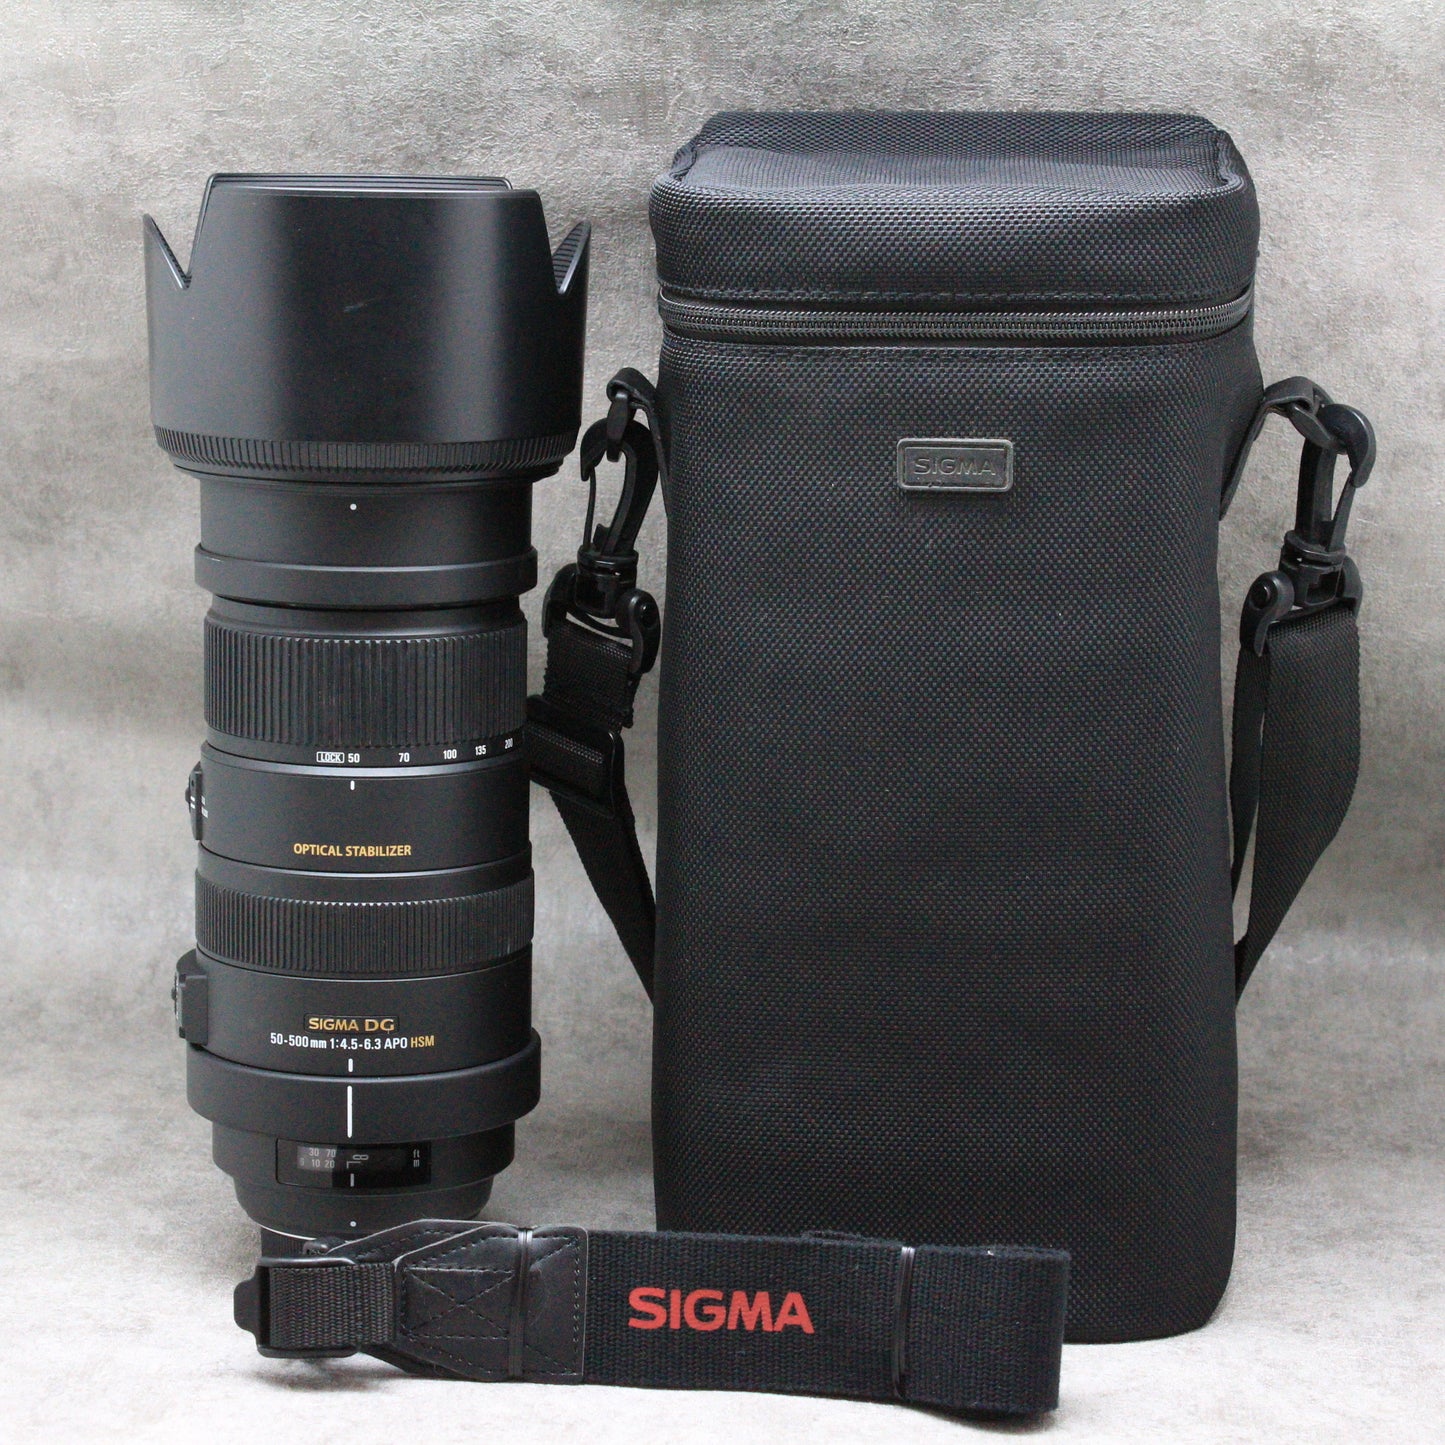 SIGMA DG 50-500ｍｍ F4.5-6.3 APO HSM OS ニコン用 シグマ フード付き